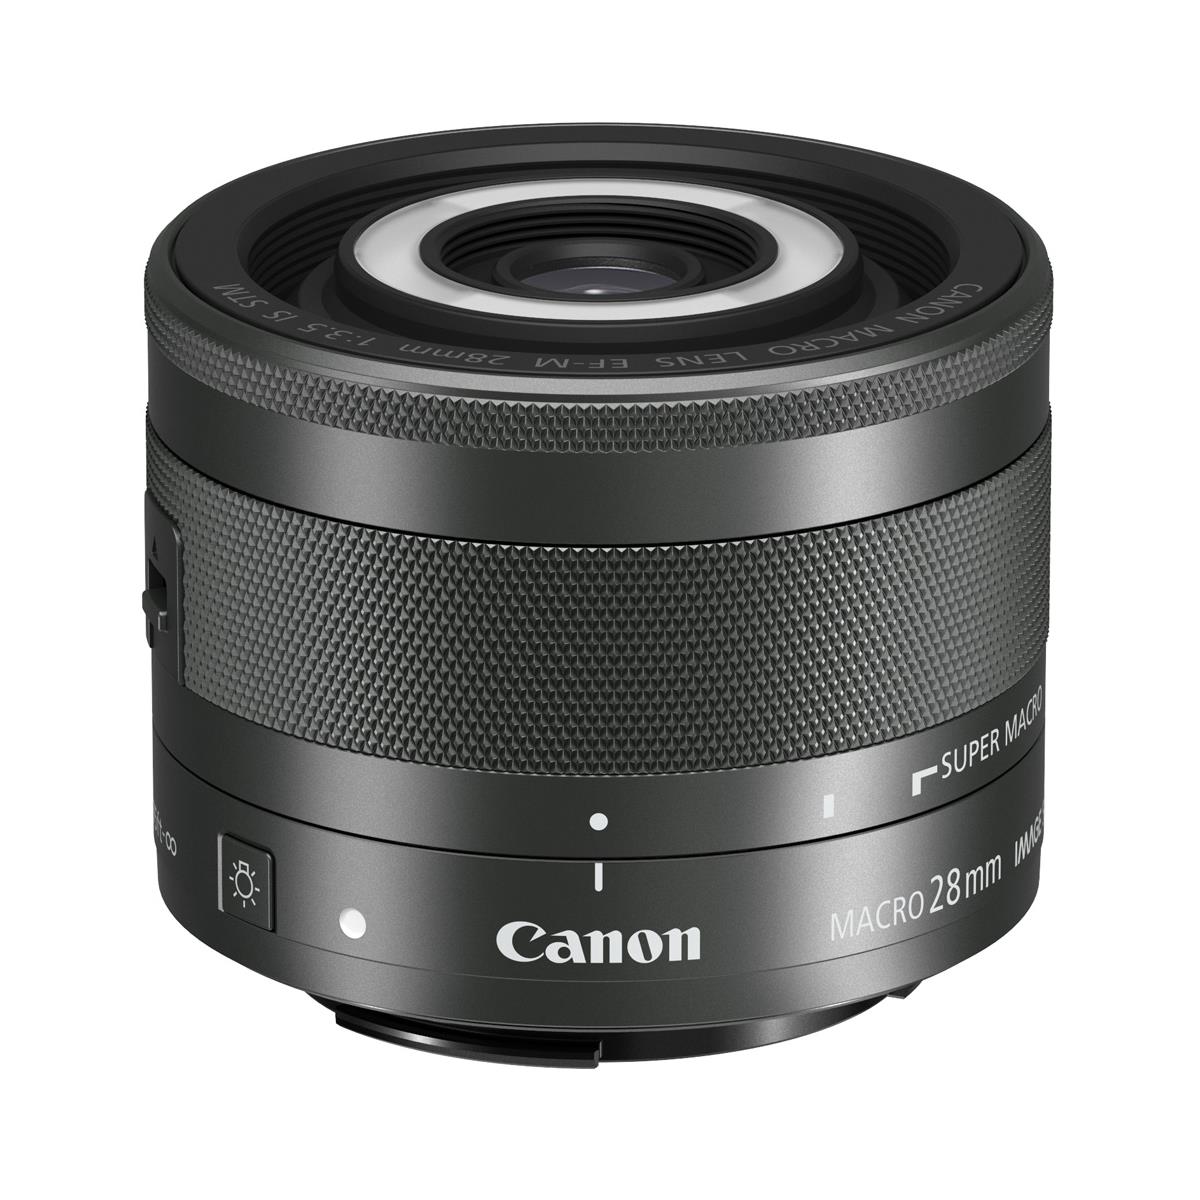 Canon Speedlite 600EX II-RT, EF-M 28mm f/3.5 Macro IS STM, PowerShot